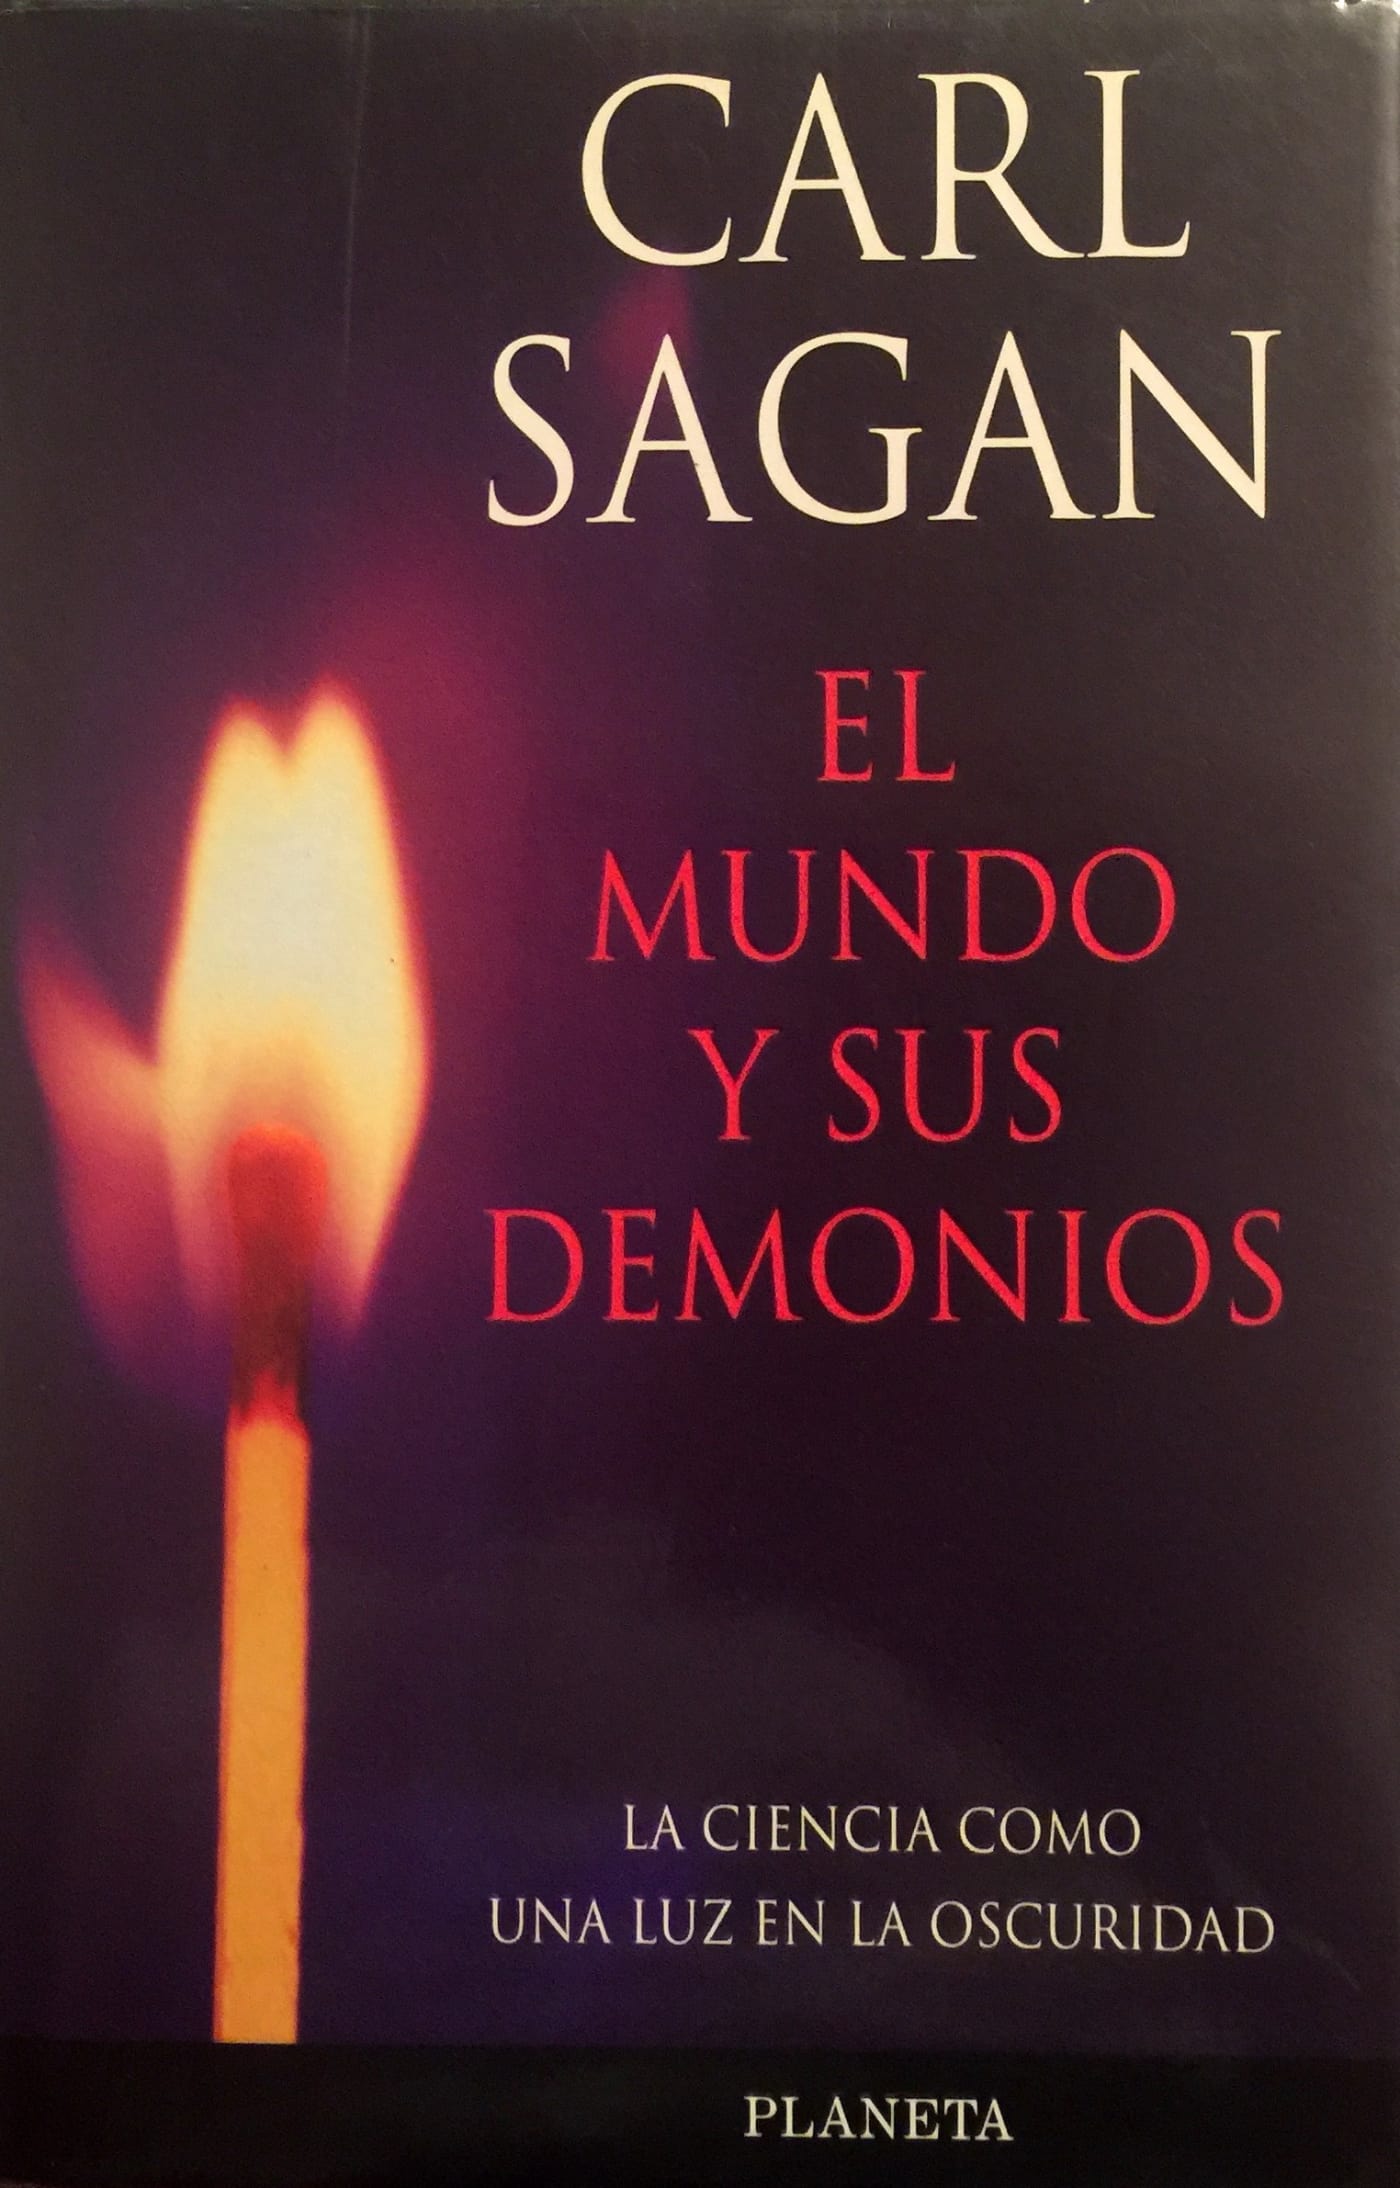 25 años de ‘El mundo y sus demonios’, el libro de Carl Sagan